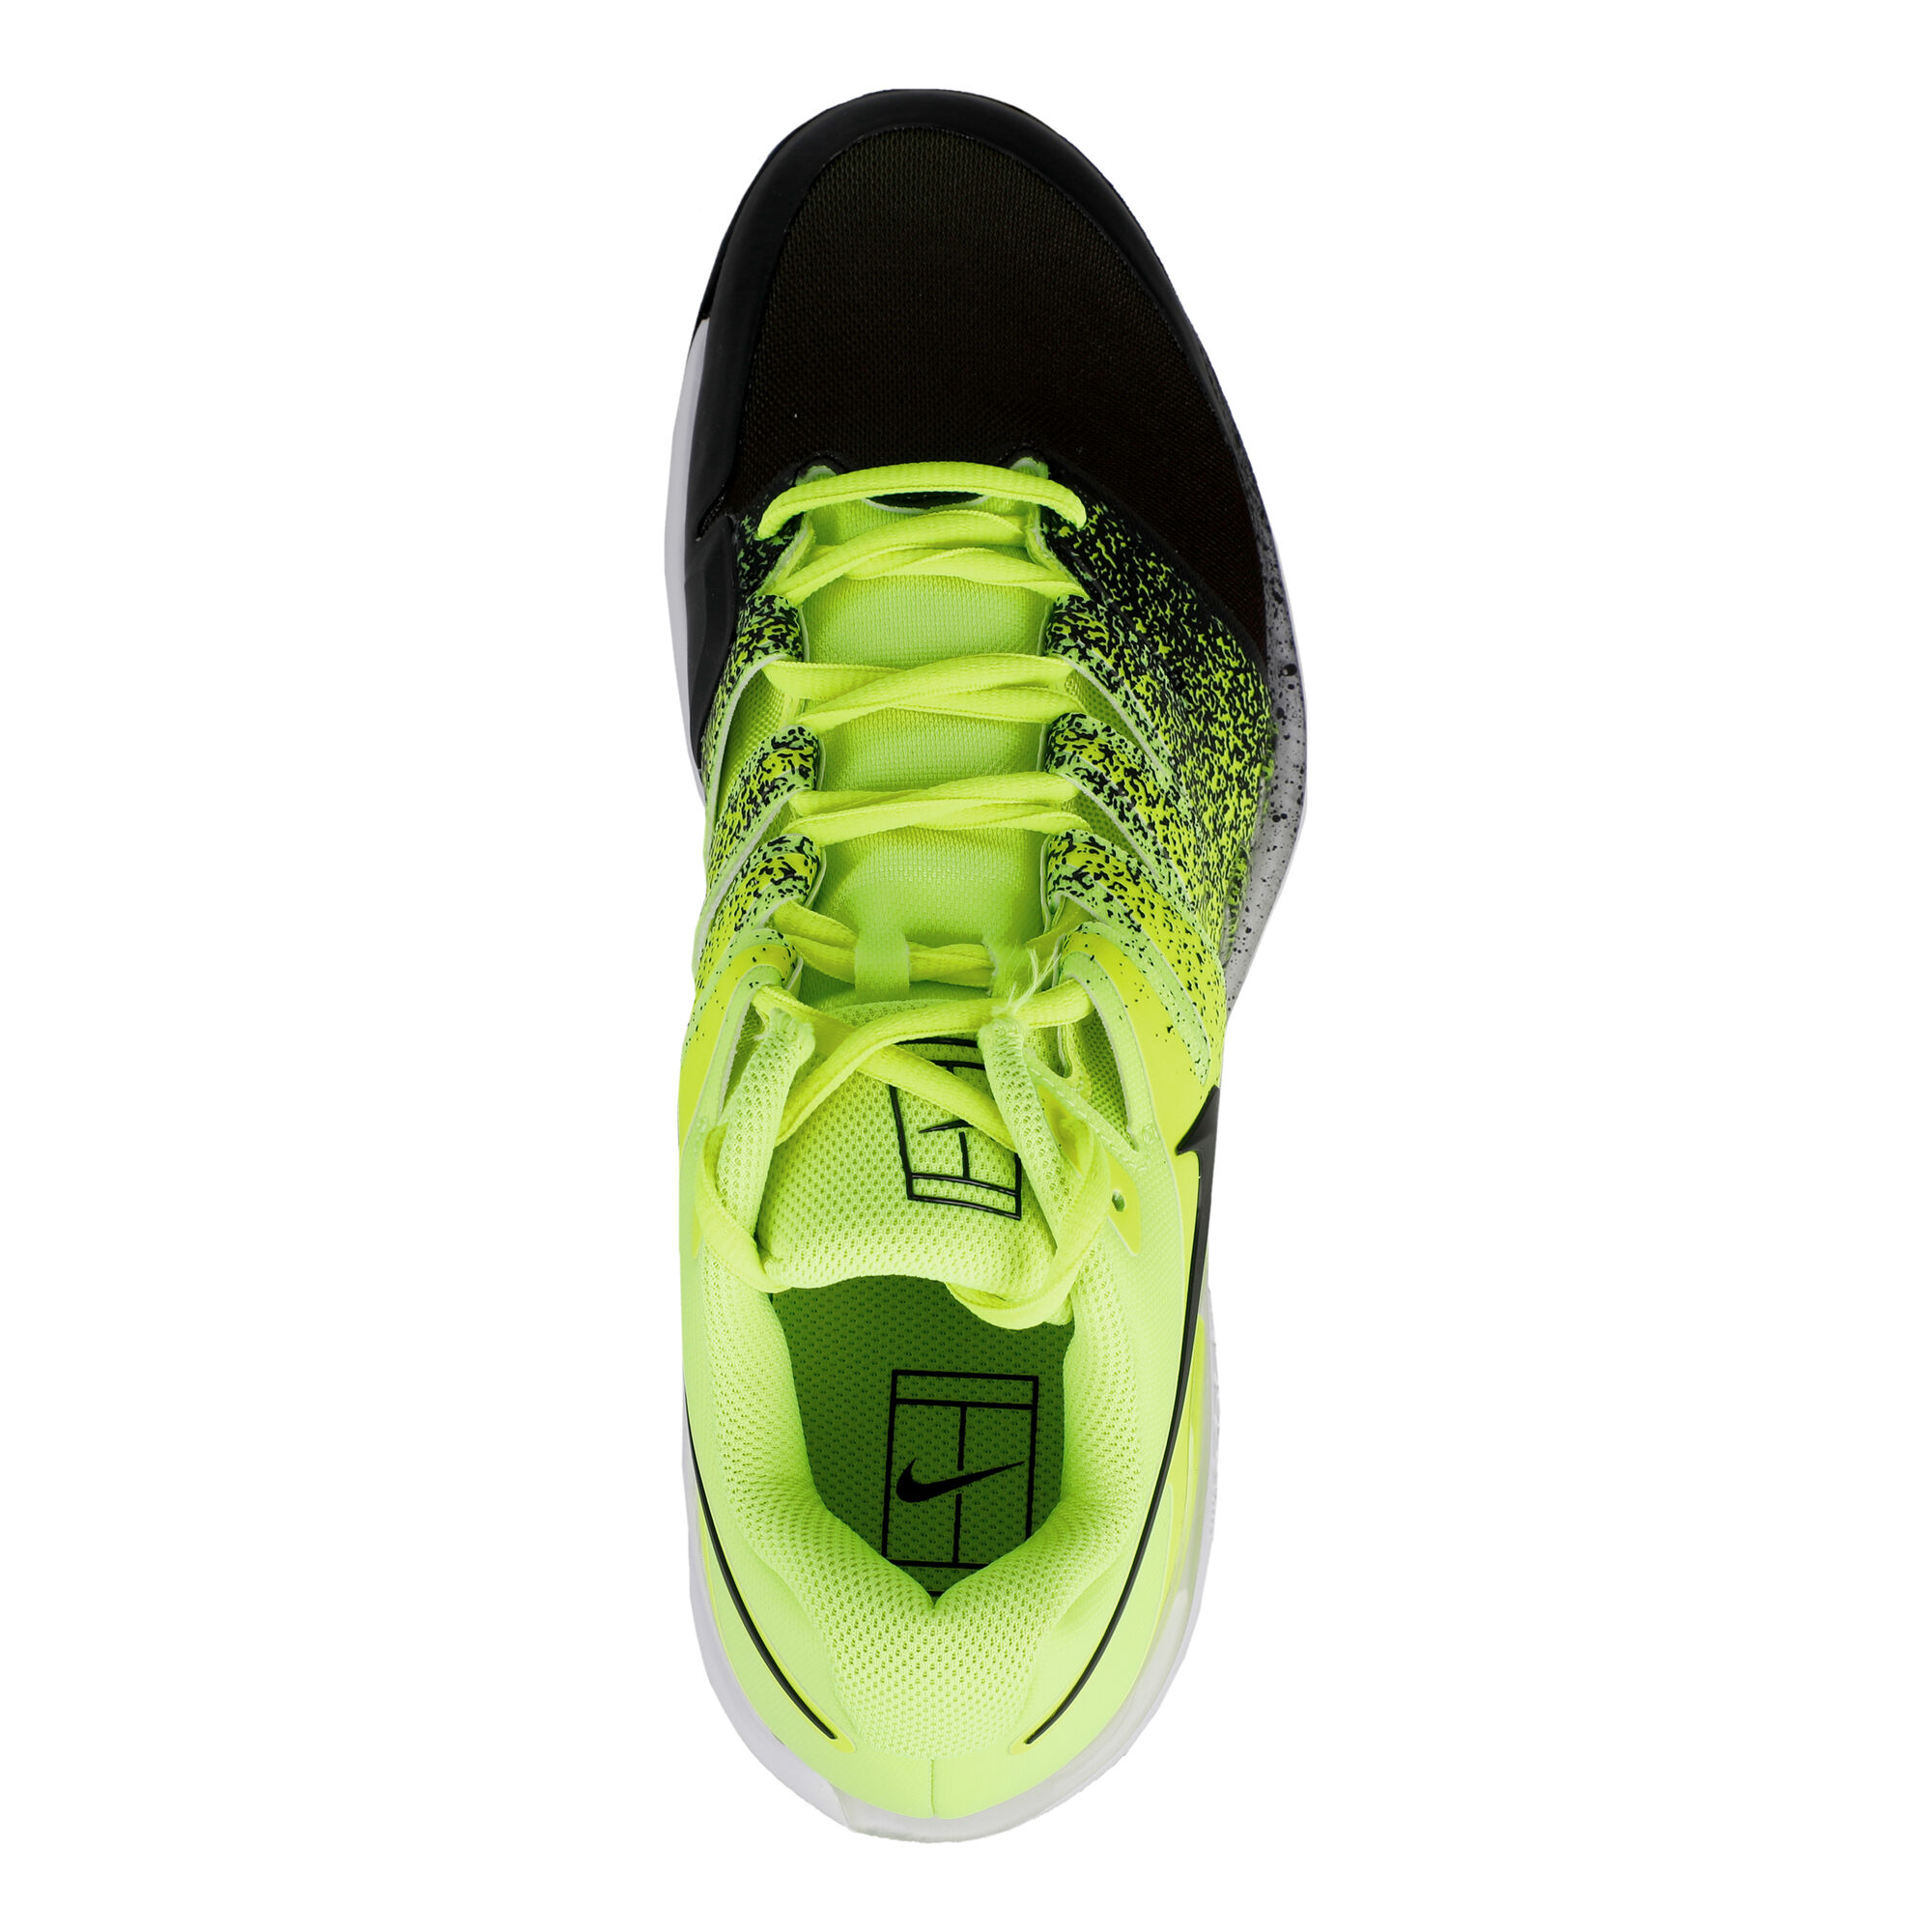 Buy Nike Air Zoom Vapor X Clay Court Shoe Men Neon Green, Light Green ...